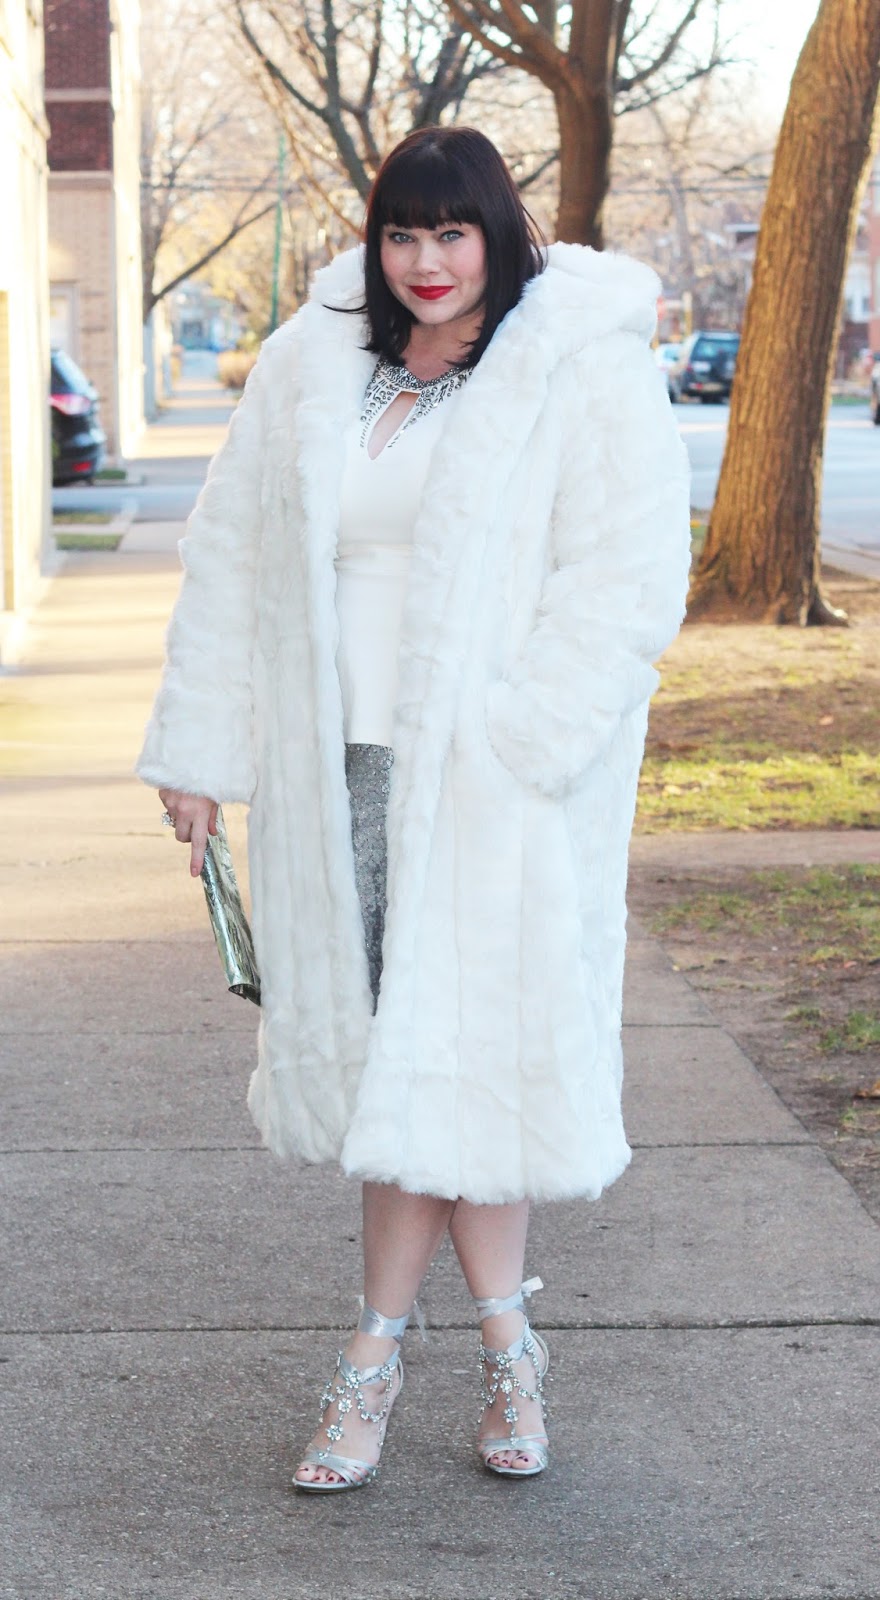 Plus Size White Fur Coat Online | bellvalefarms.com